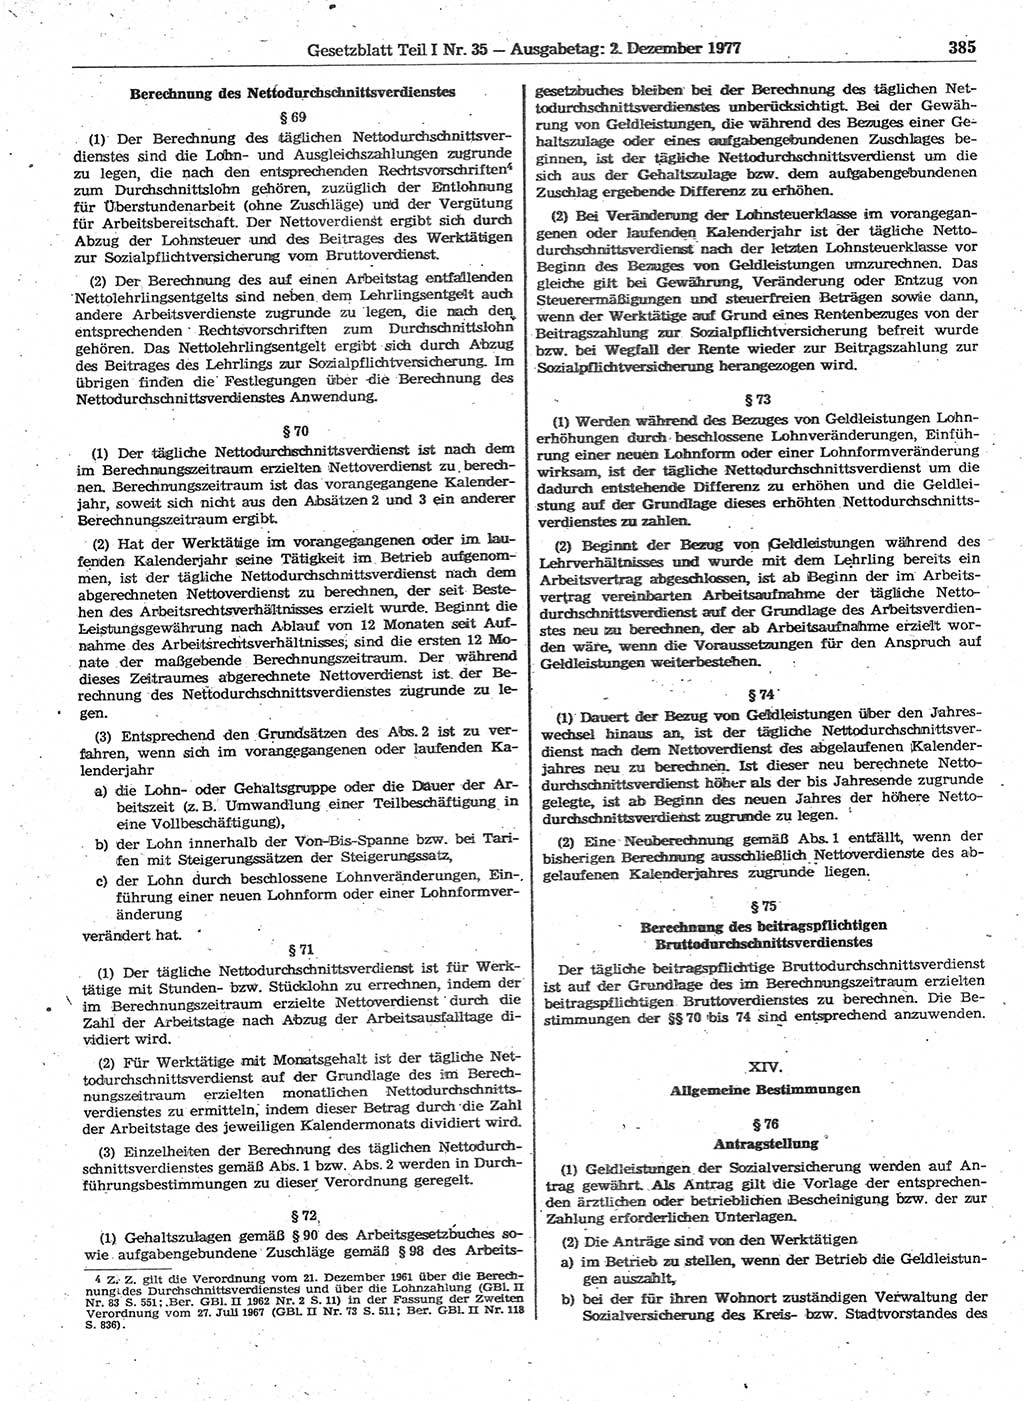 Gesetzblatt (GBl.) der Deutschen Demokratischen Republik (DDR) Teil Ⅰ 1977, Seite 385 (GBl. DDR Ⅰ 1977, S. 385)